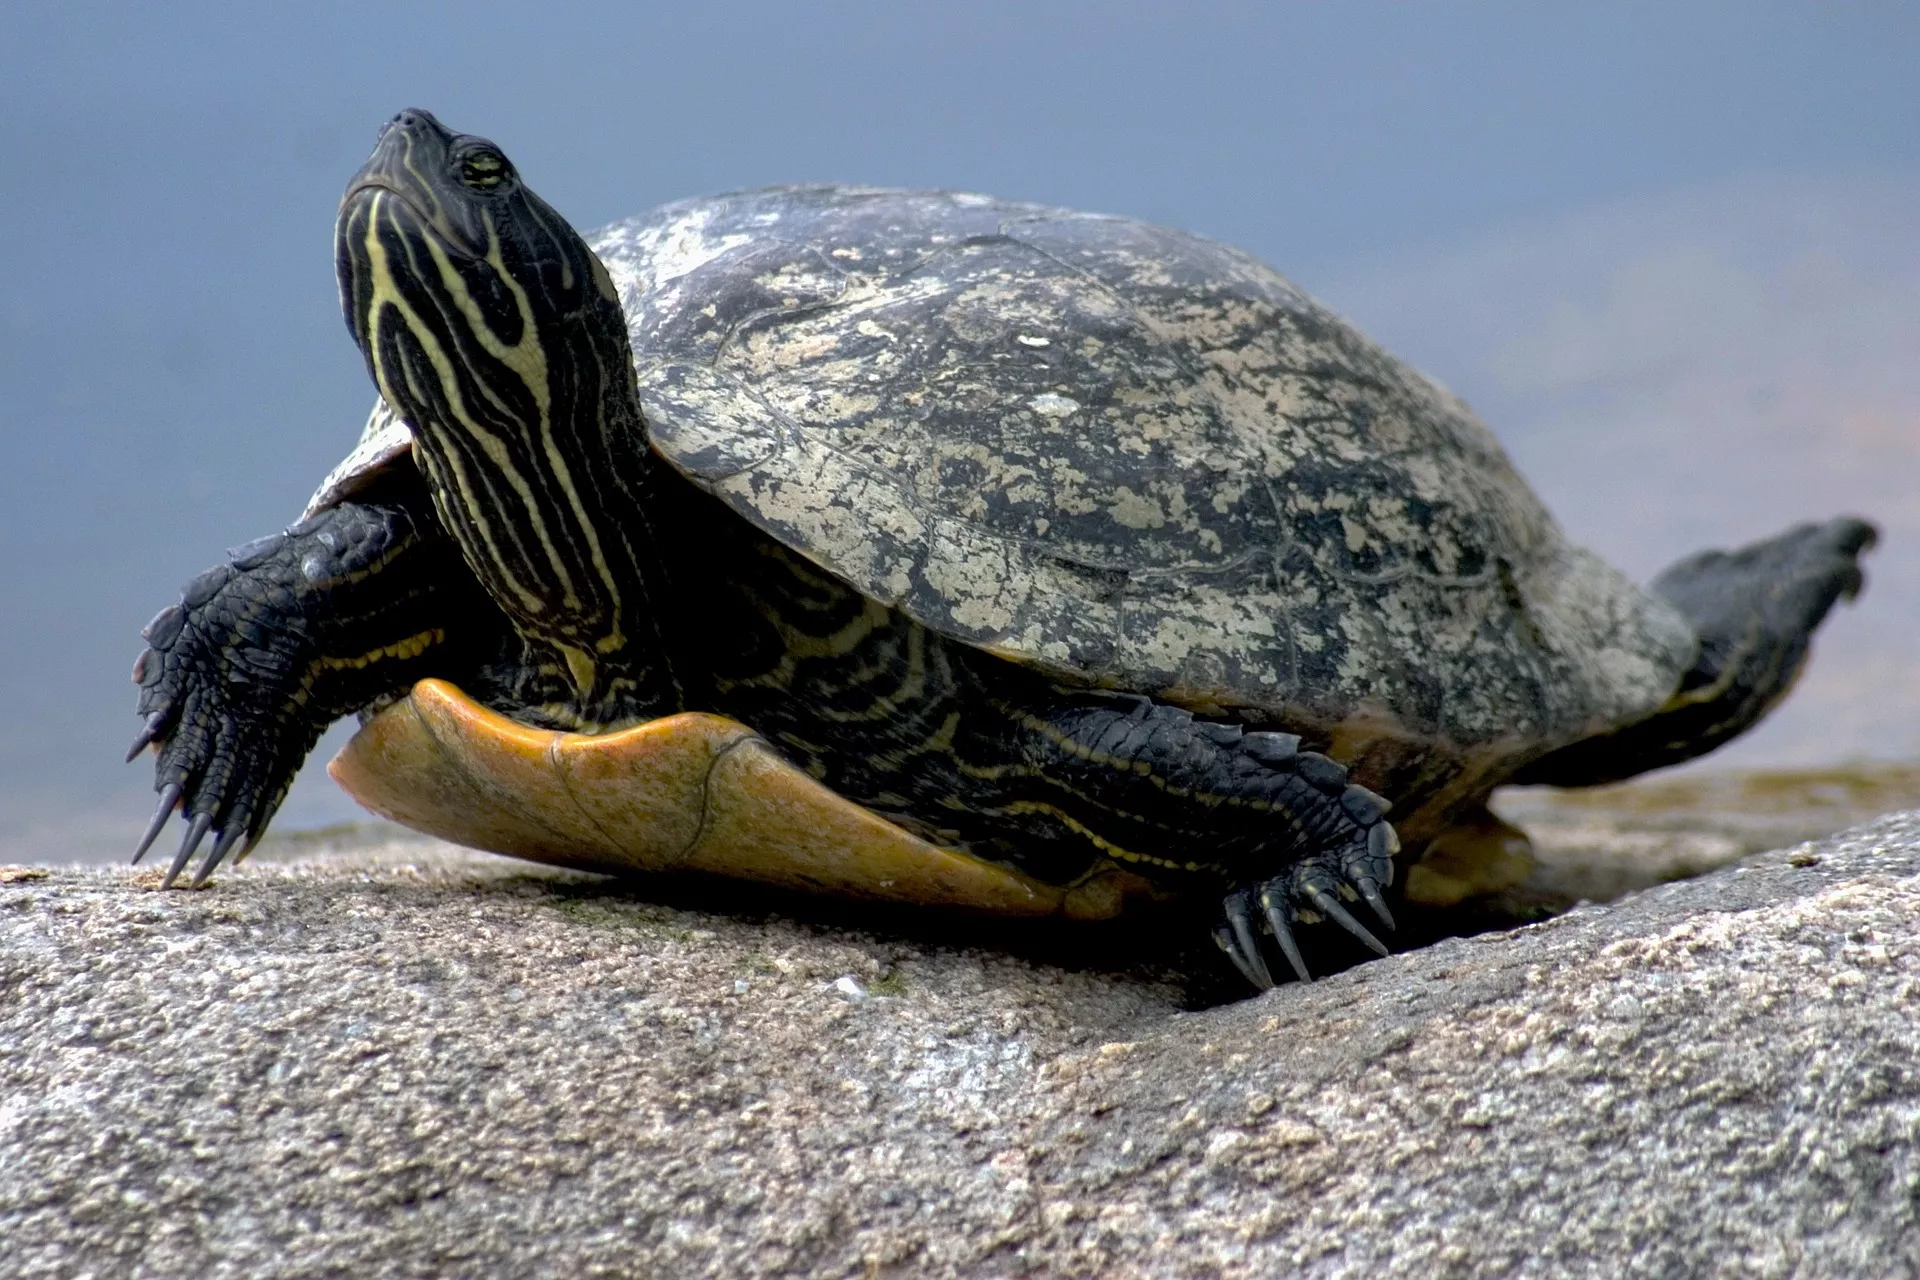 Chov želv může být někdy náročný. Želví řeč těla vám ale prozradí mnohé o jejich potřebách